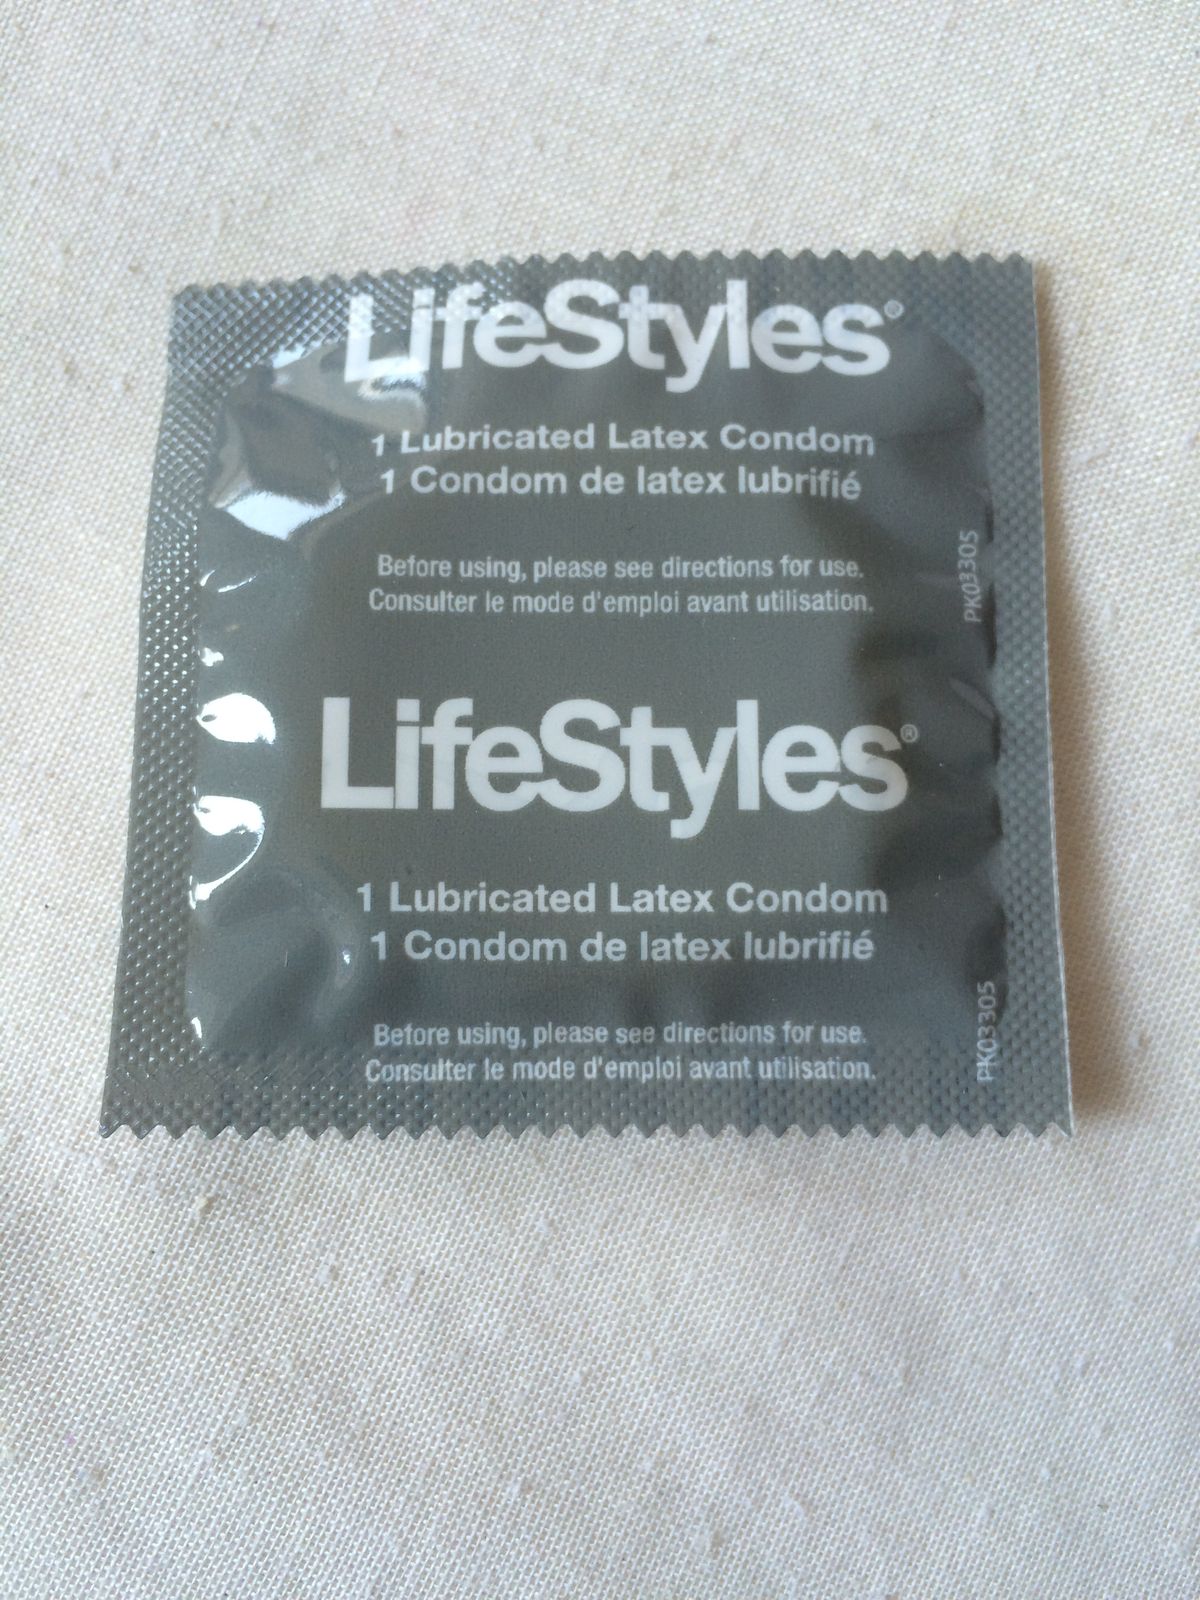 Ich habe 7 Kondome getestet und so stapeln sie sich